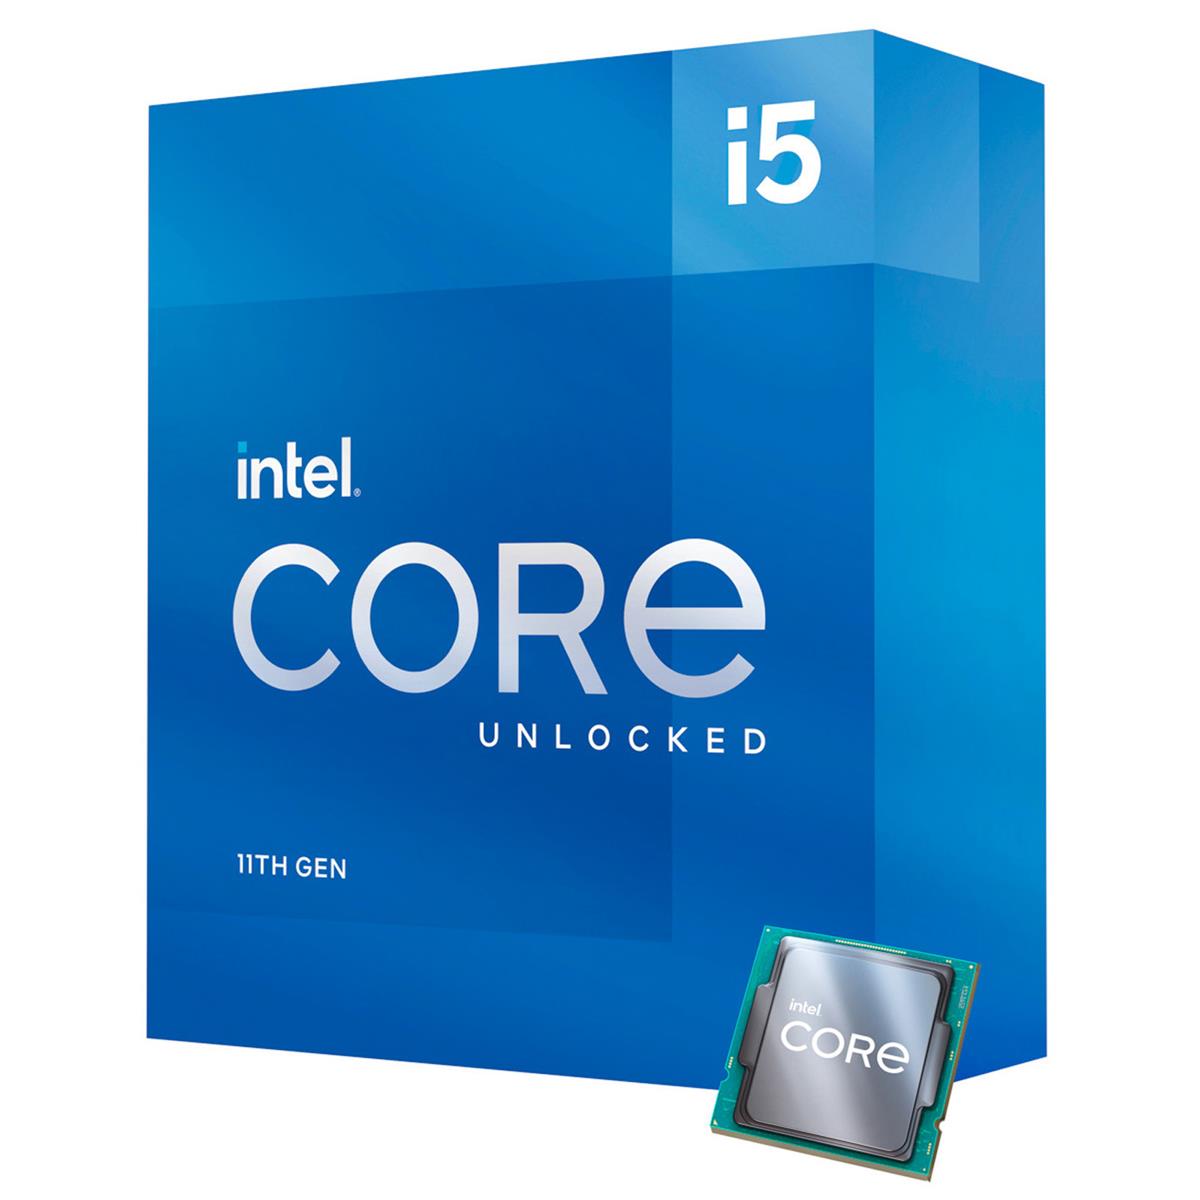 Image of Intel Core i5-11600K 3.9GHz 6-Core Unlocked Desktop Processor